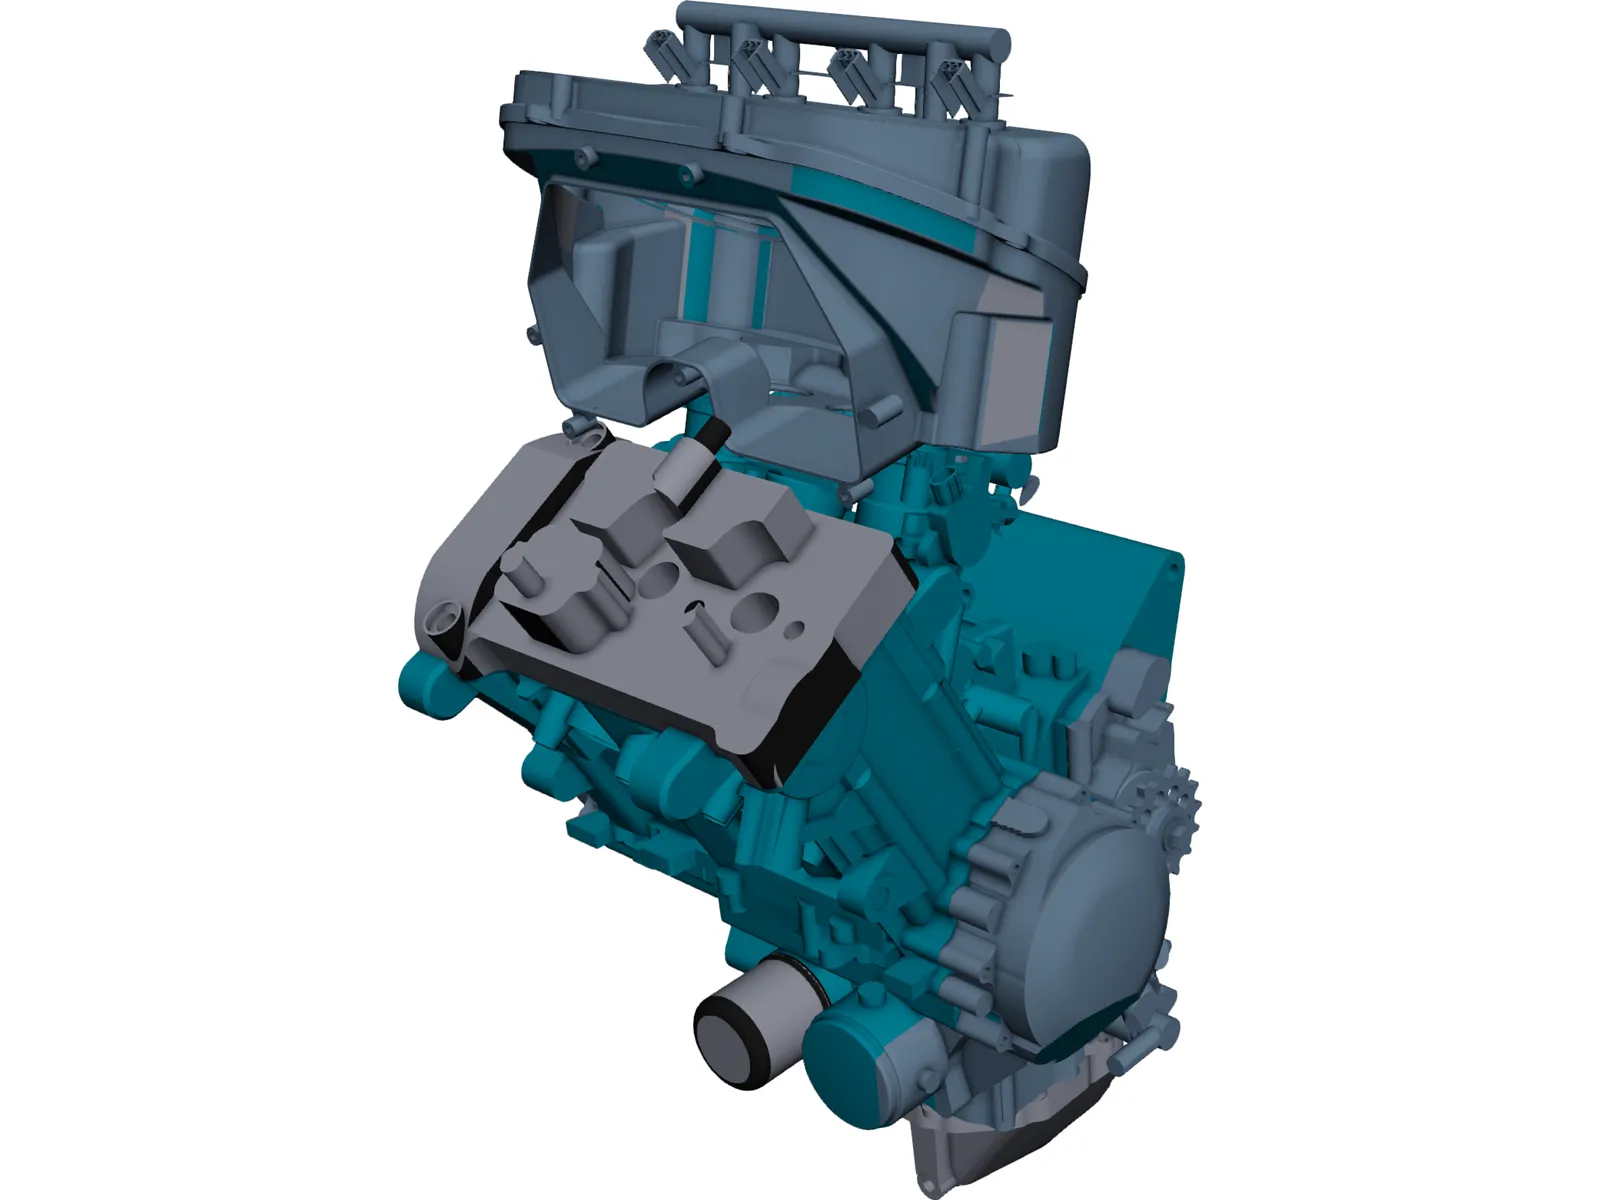 Triumph 675 Engine 3D Model